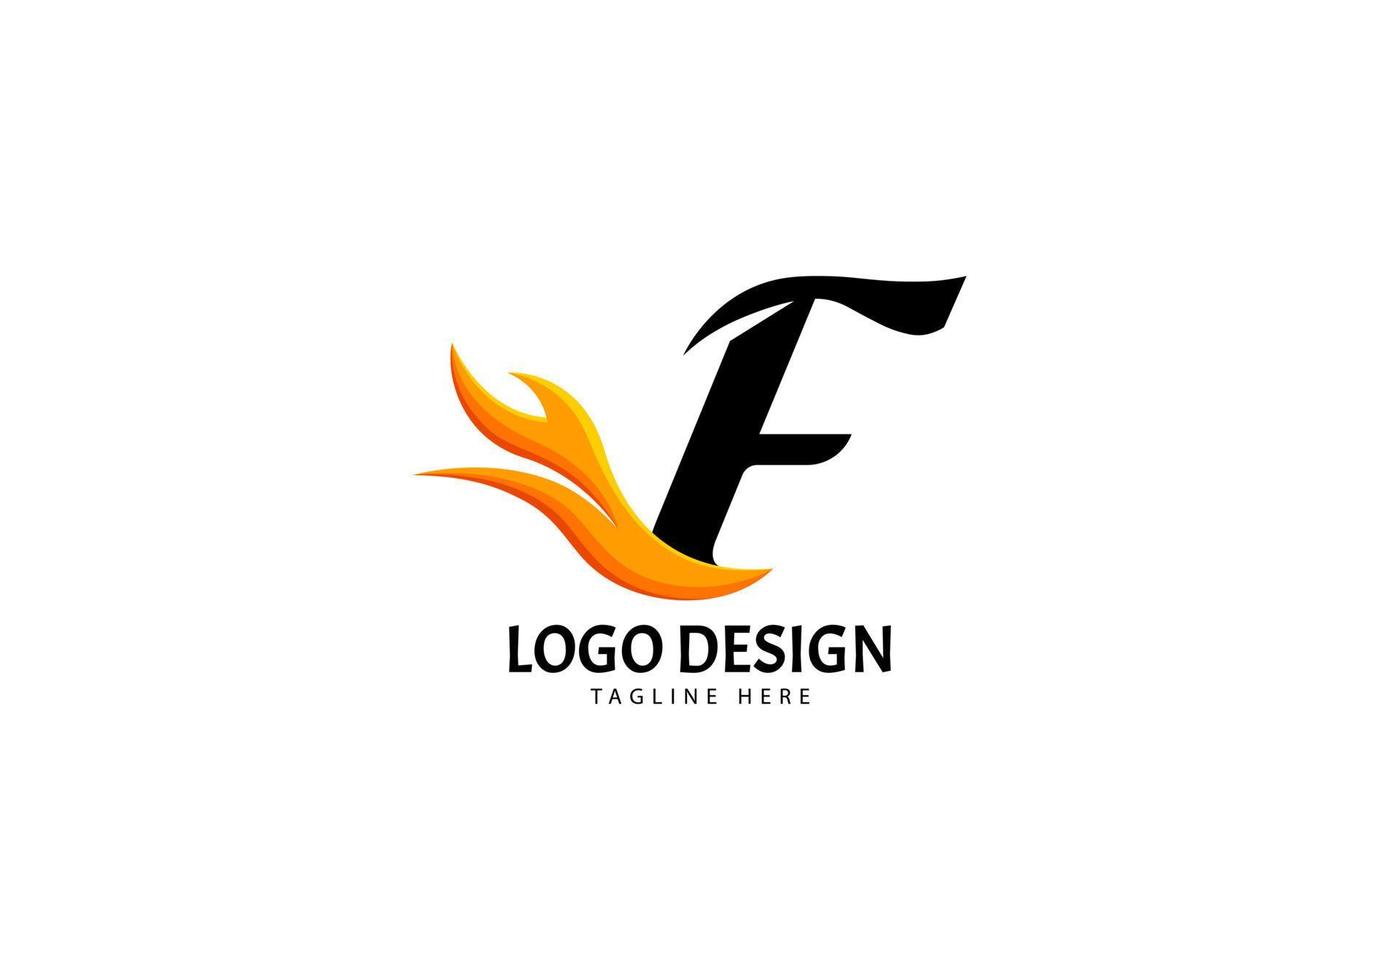 logotipo de letra f fire para marca o empresa, concepto minimalista. vector